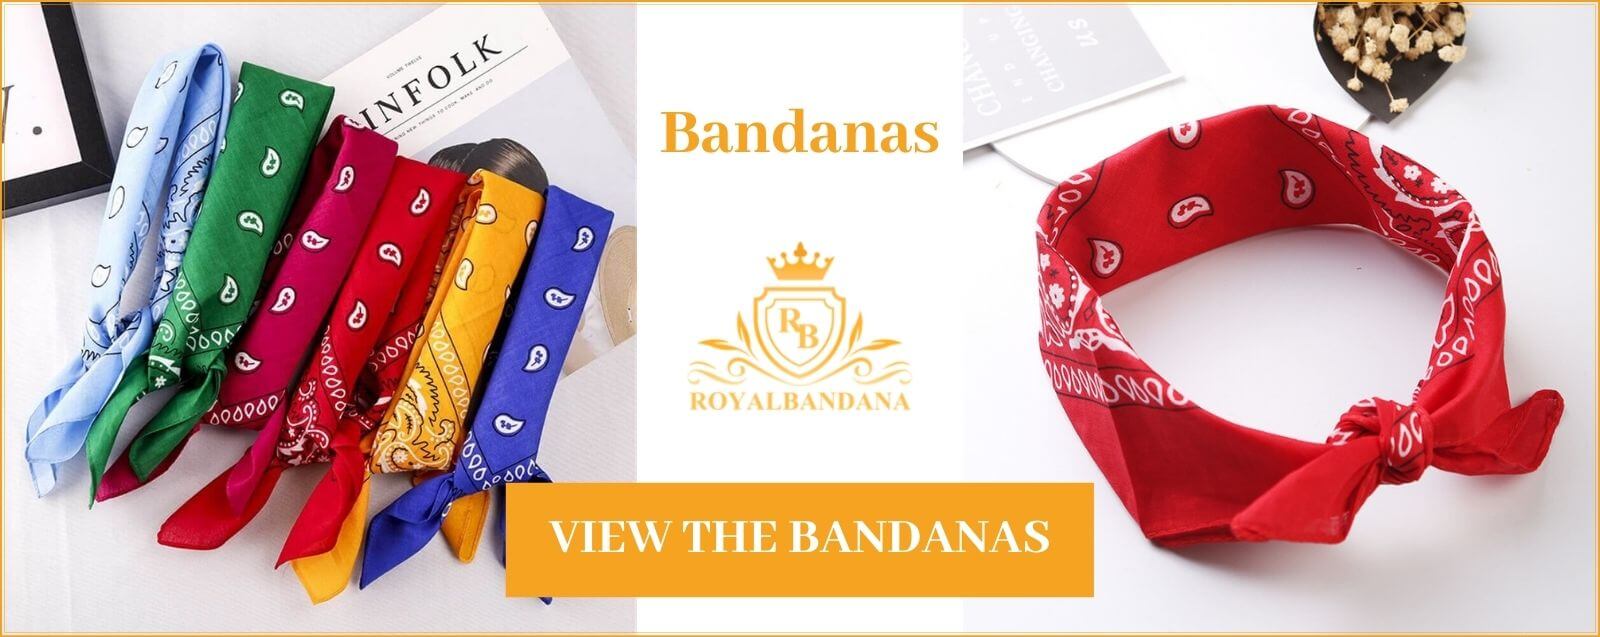 see bandana for men royalbandana